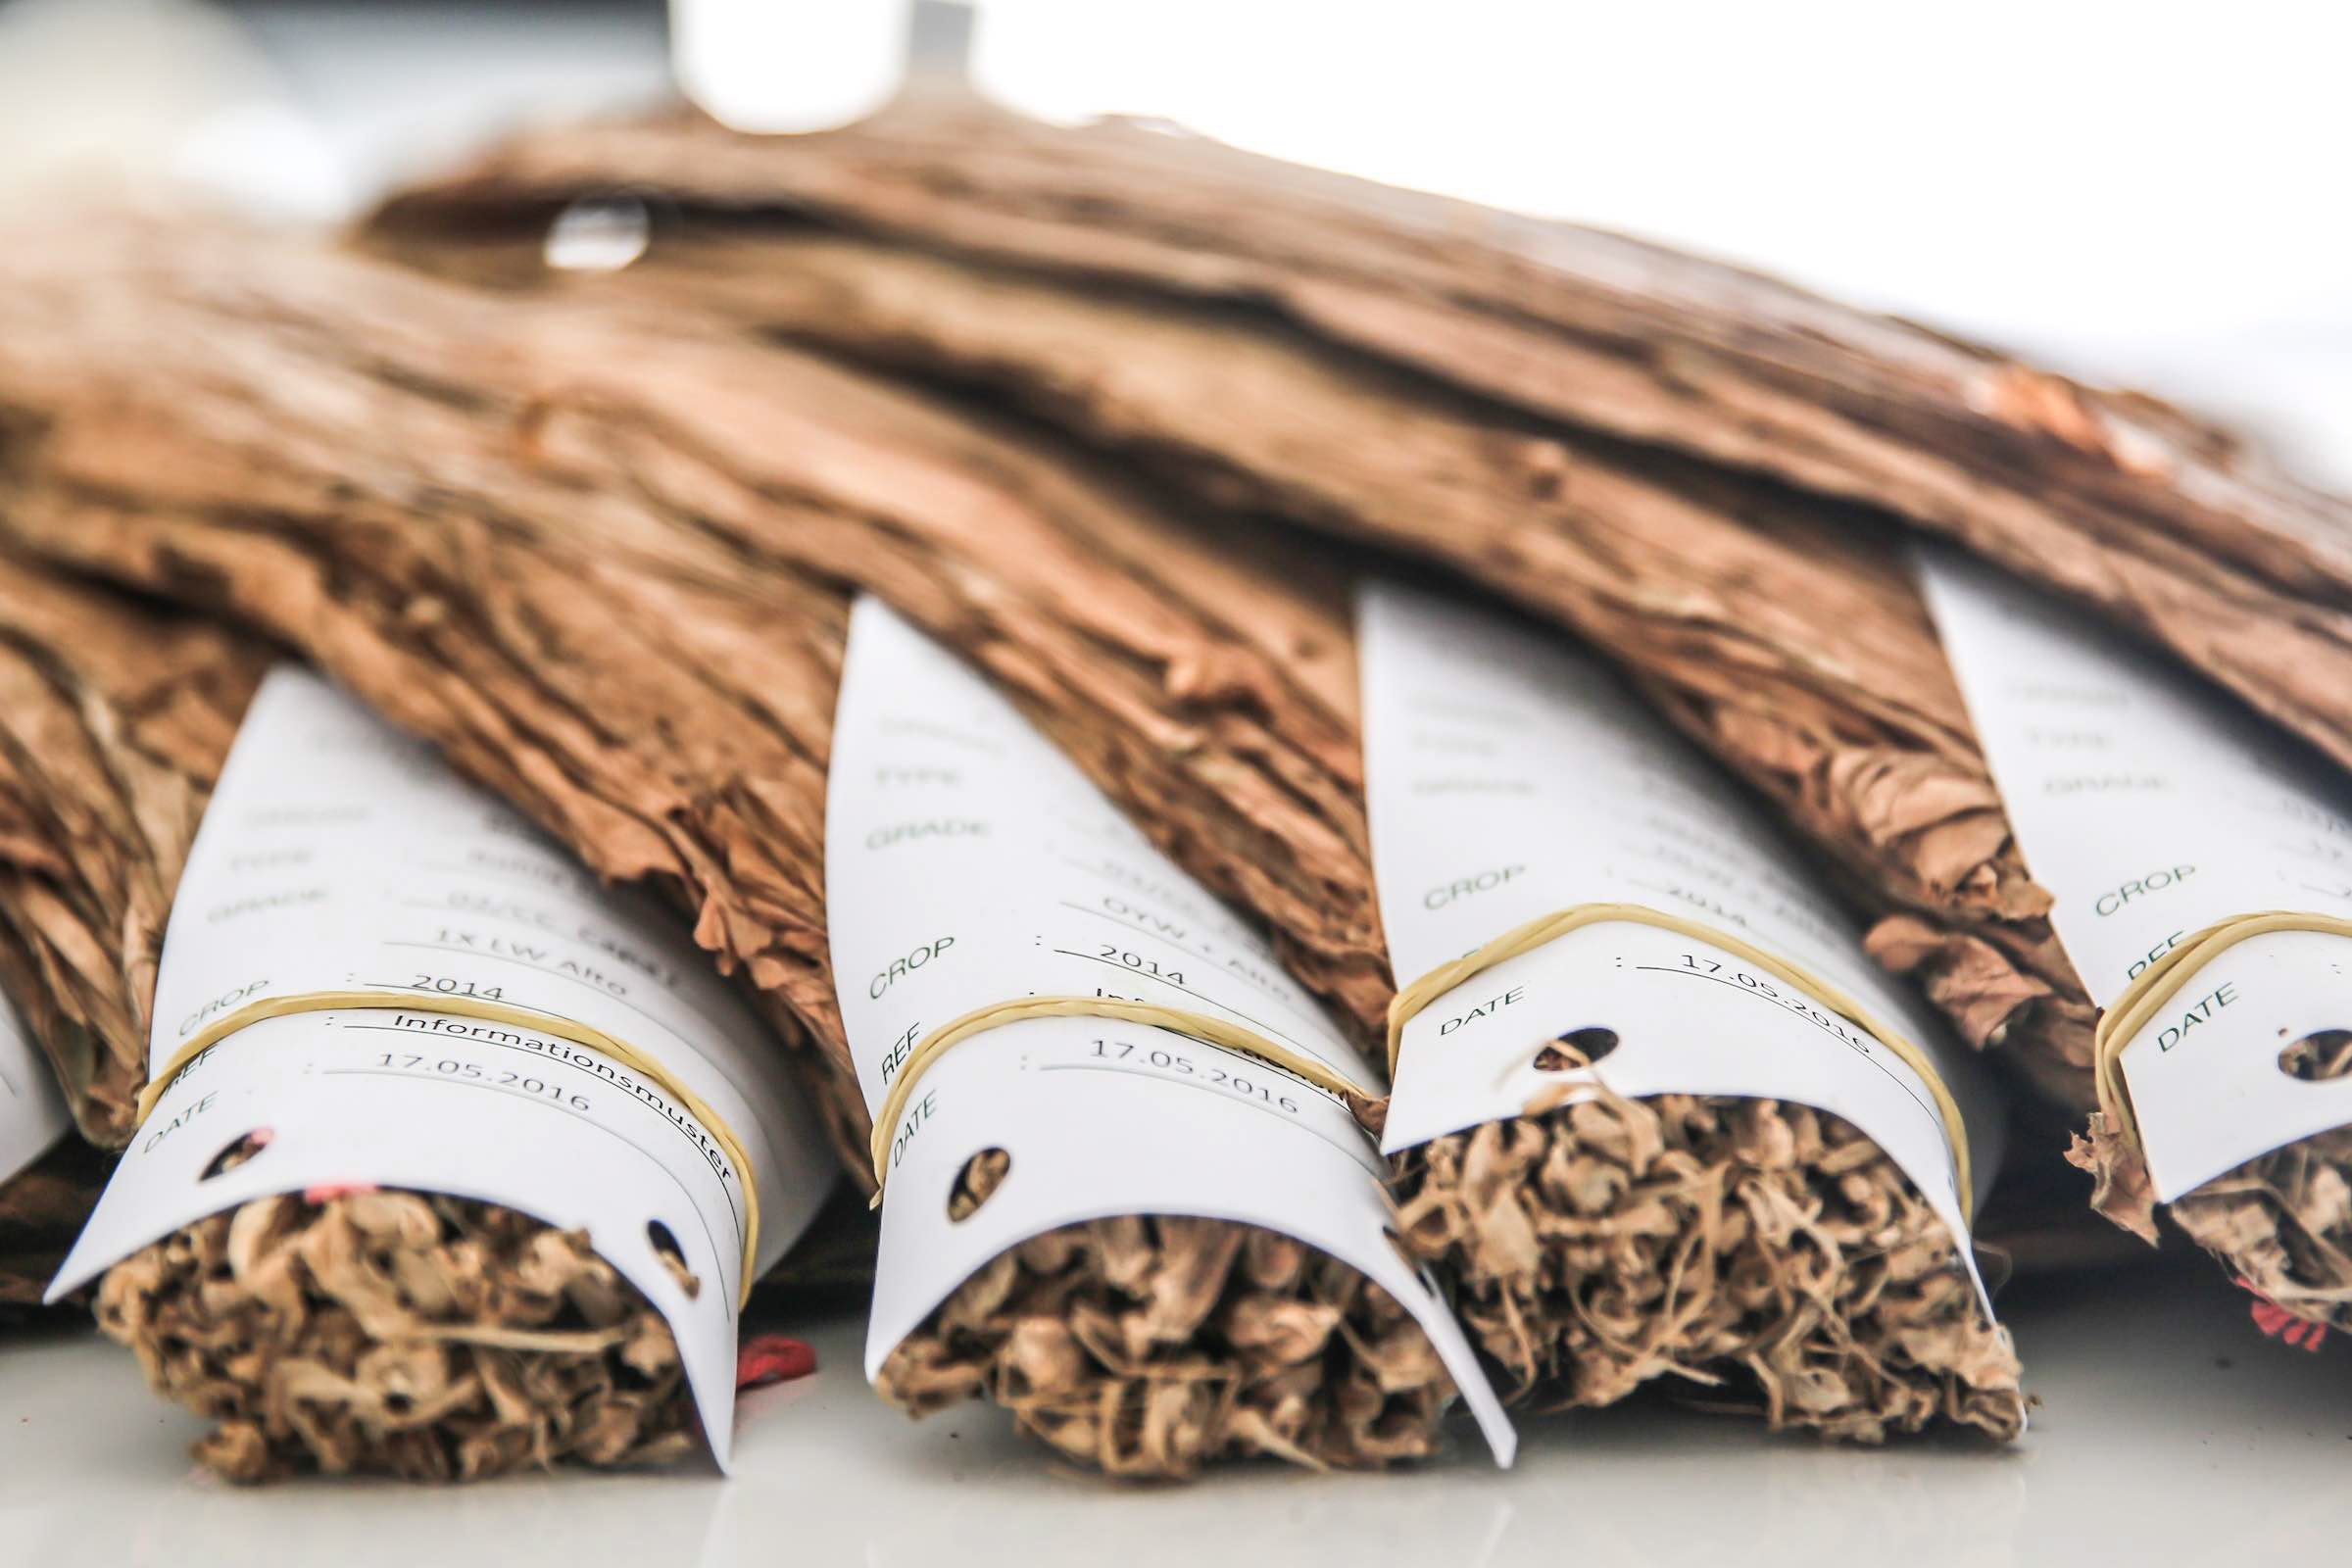 Zigarrendreher | Zigarrenroller | Trocadero | Zigarren | Drehen | Tabak | Banderole | Bauchbinde | Tabak | Sumatra | Brasilien | Indonesion | Cuba | Torpedo | Robusto | Churchill | Corona